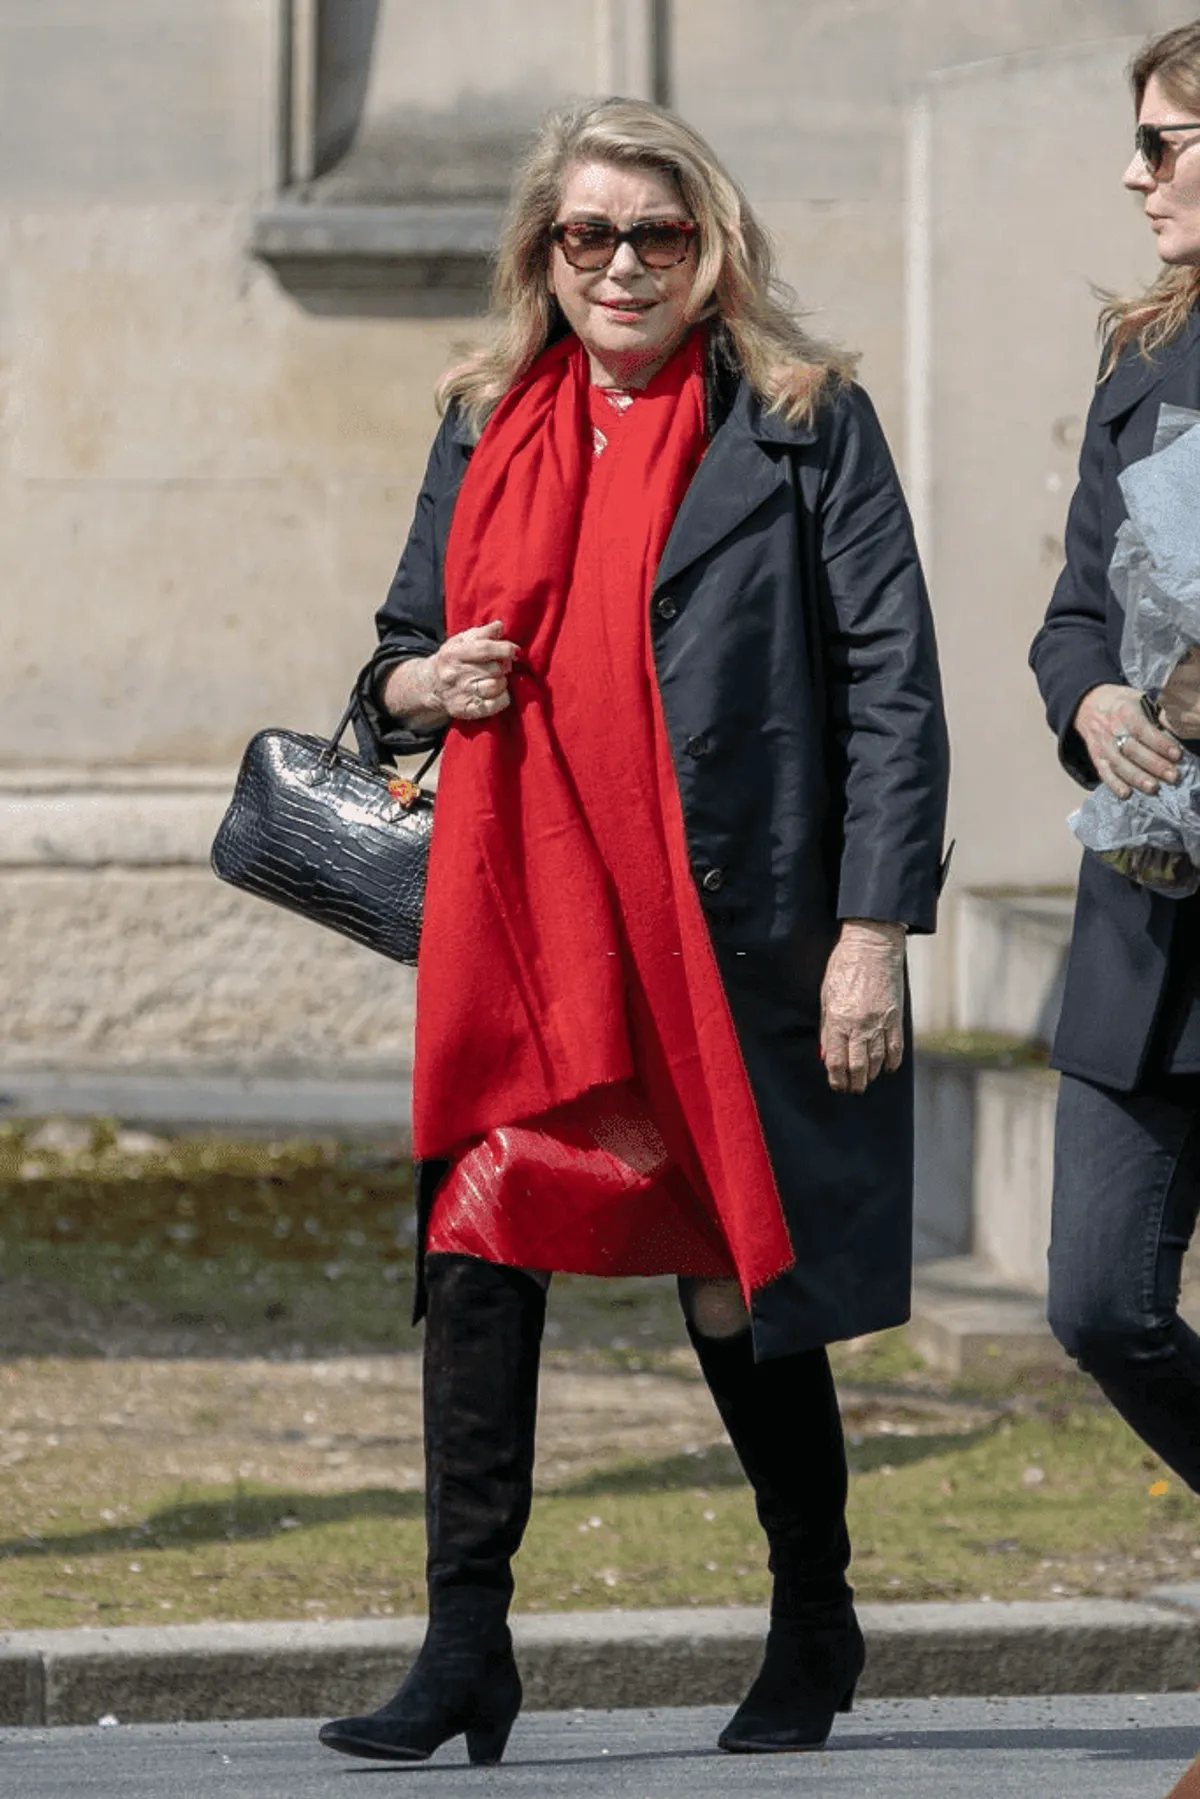  Catherine Deneuve et sa fille Chiara Mastroianni assistent aux funérailles d'Agnès Varda au cimetière Montparnasse le 02 avril 2019 à Paris, en France. | Photo : Getty Images